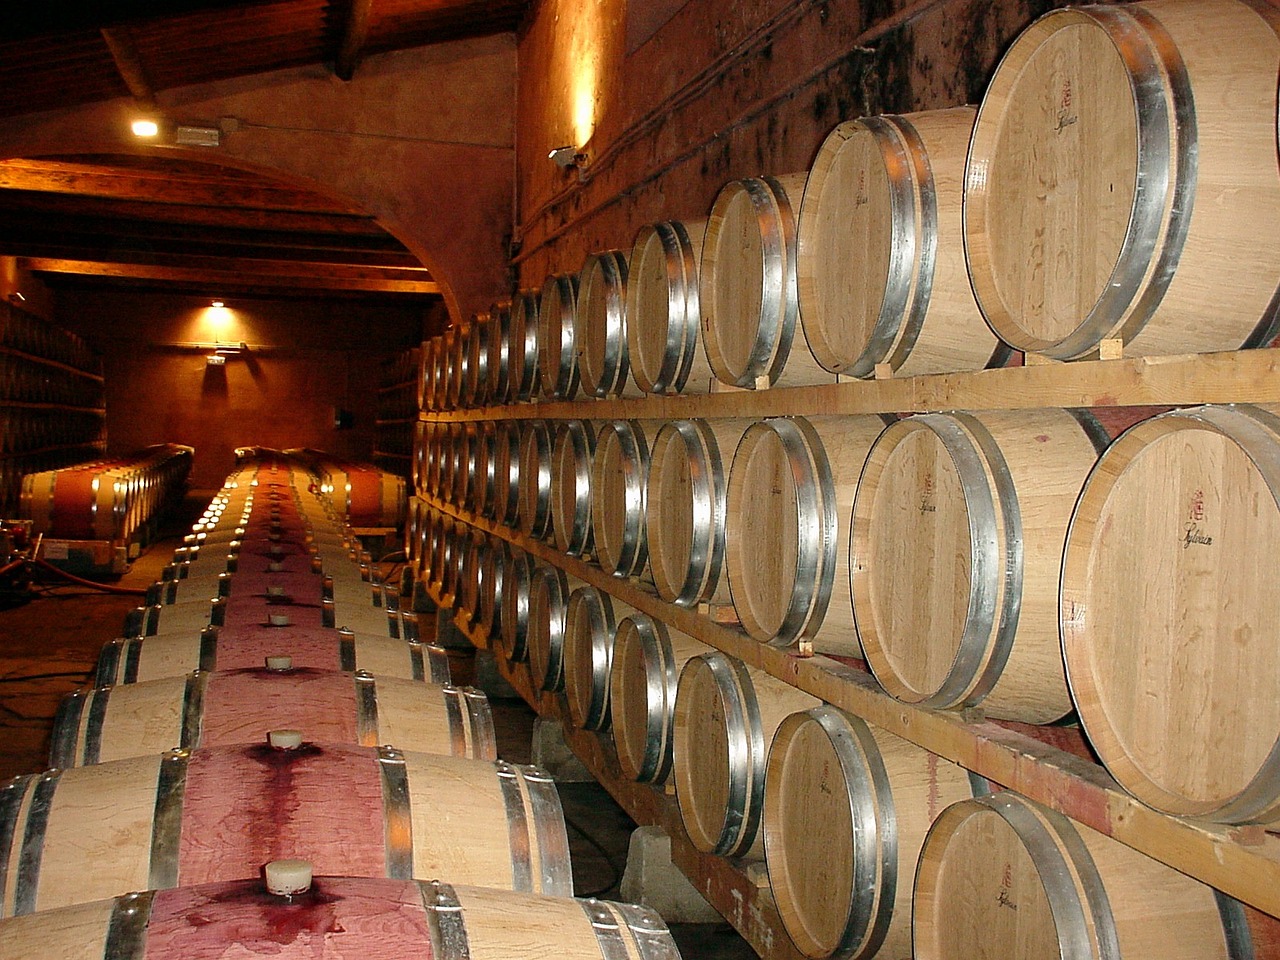 Túl sok a bor, az állam 200 millió eurót költene a megsemmisítésre Franciaországban